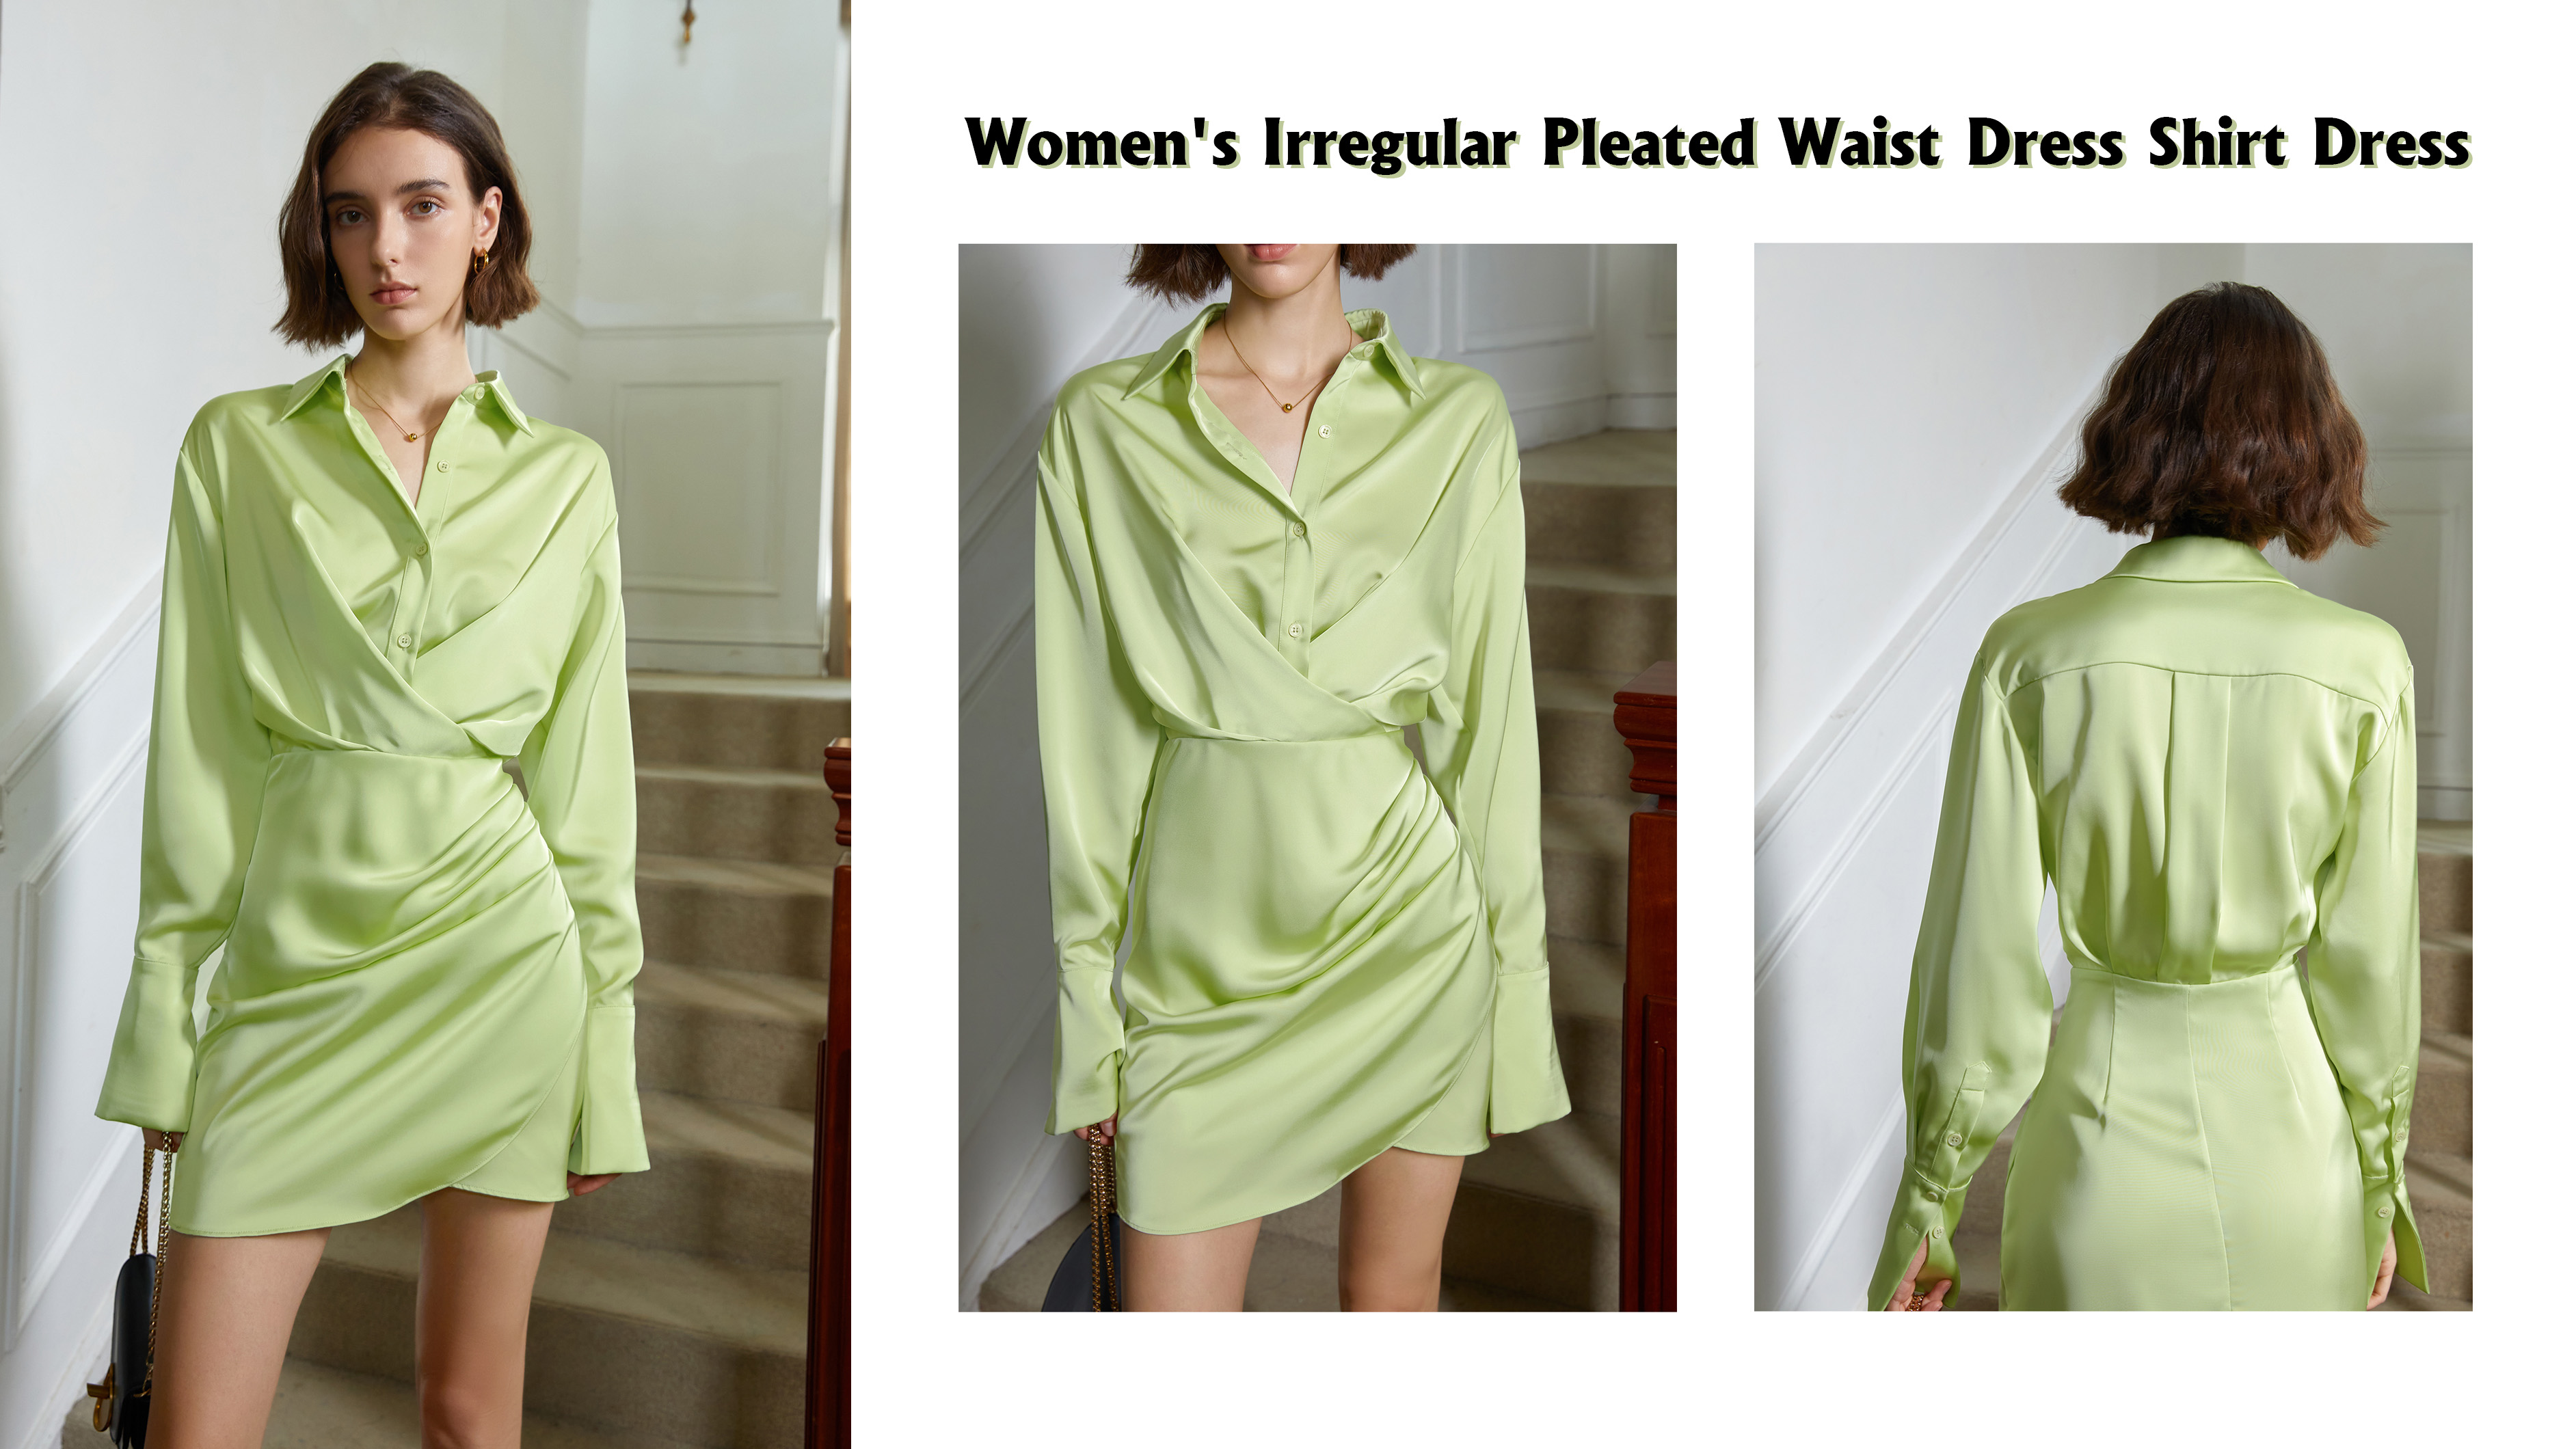 Women's Irregular Pleated Waist Dress Shirt Dress Supplier & manufacturers | Auschalink